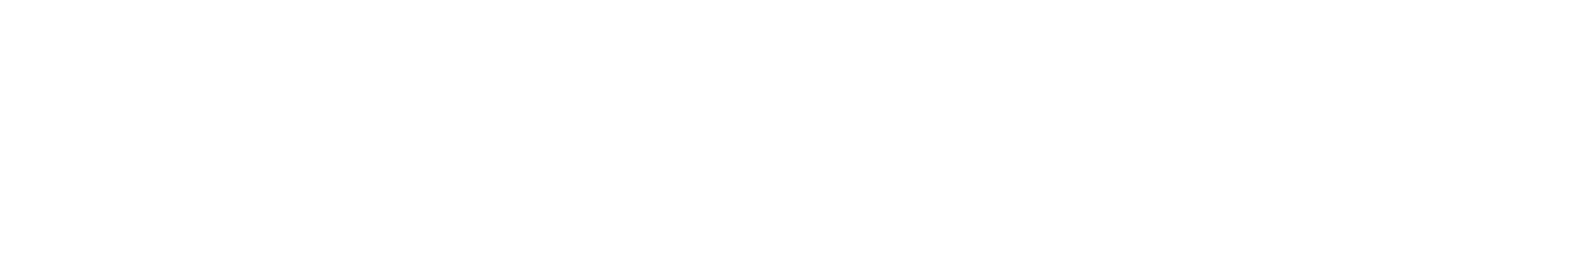 Unum logo large for dark backgrounds (transparent PNG)